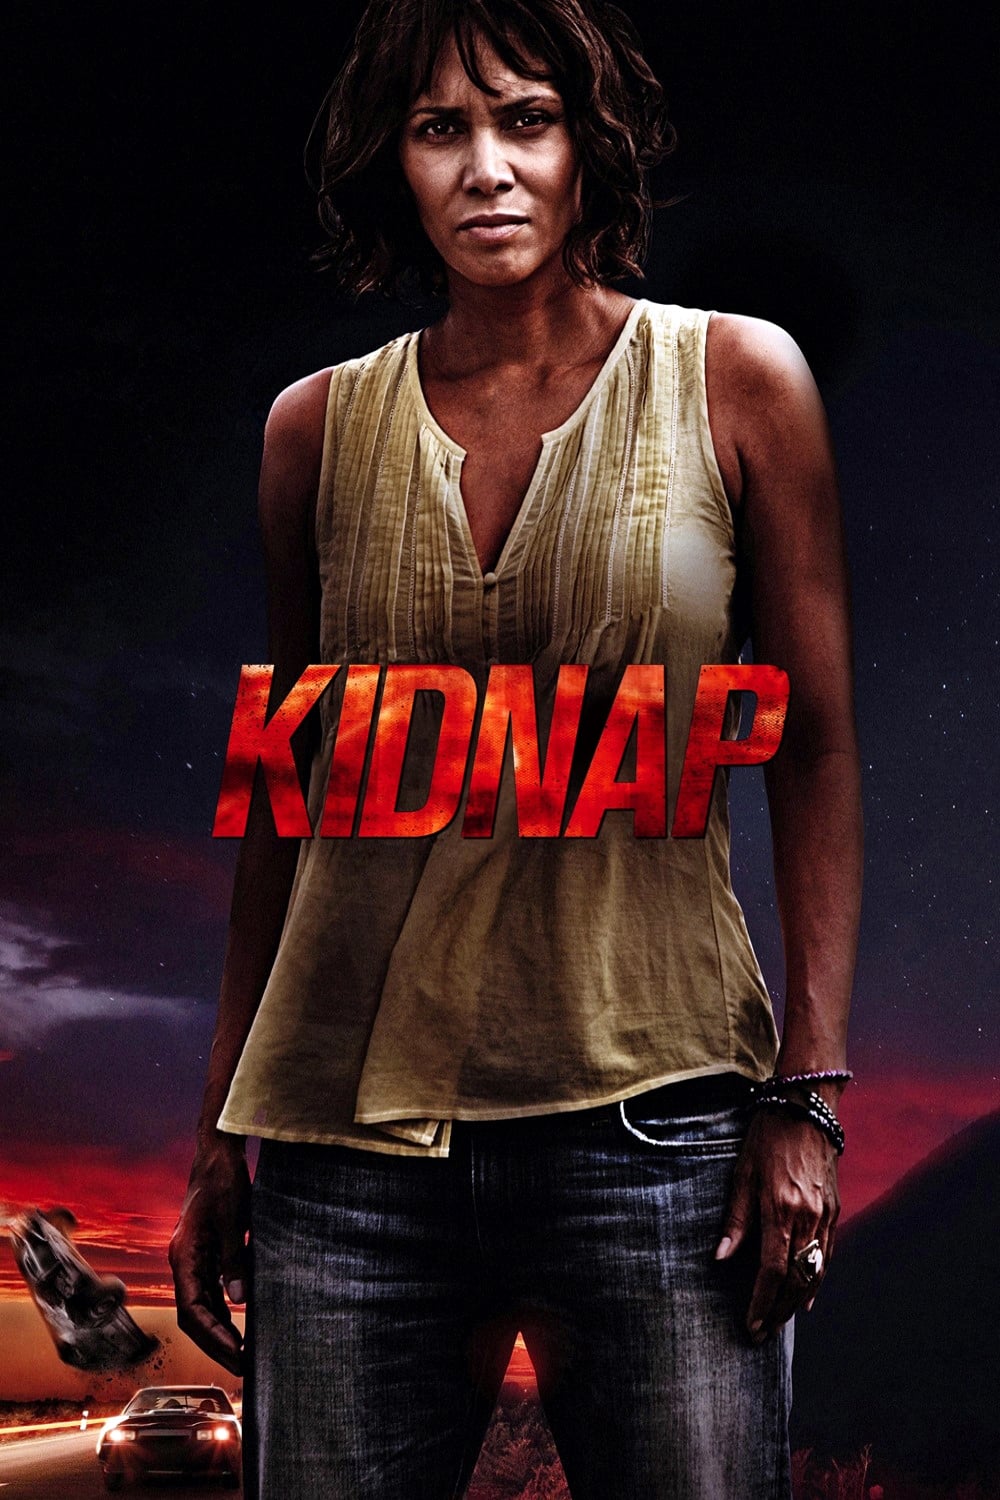 KIDNAP HD vudu/iTunes via moviesanywhere